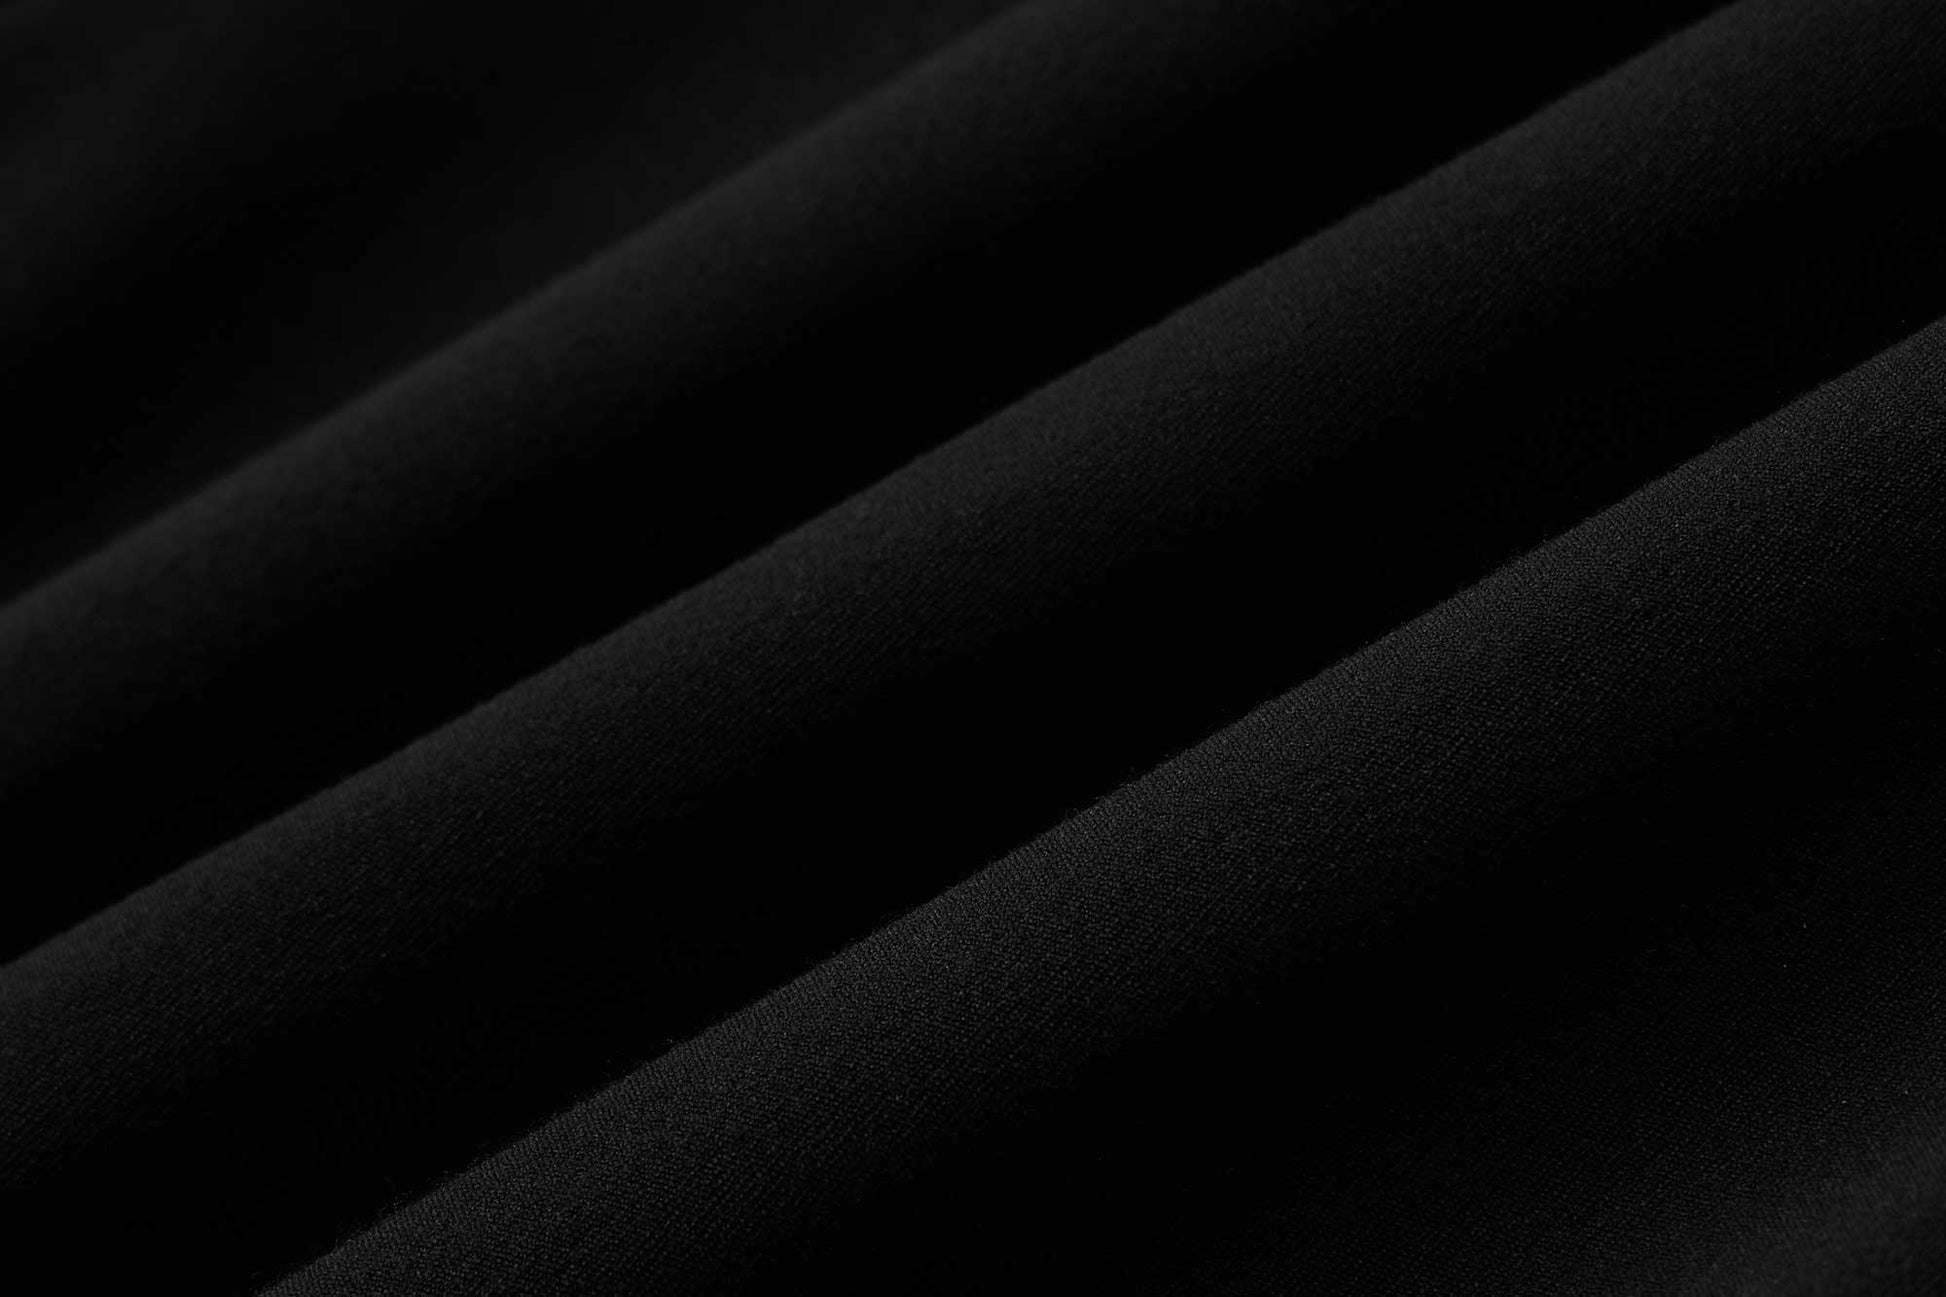 fabric details of leggings